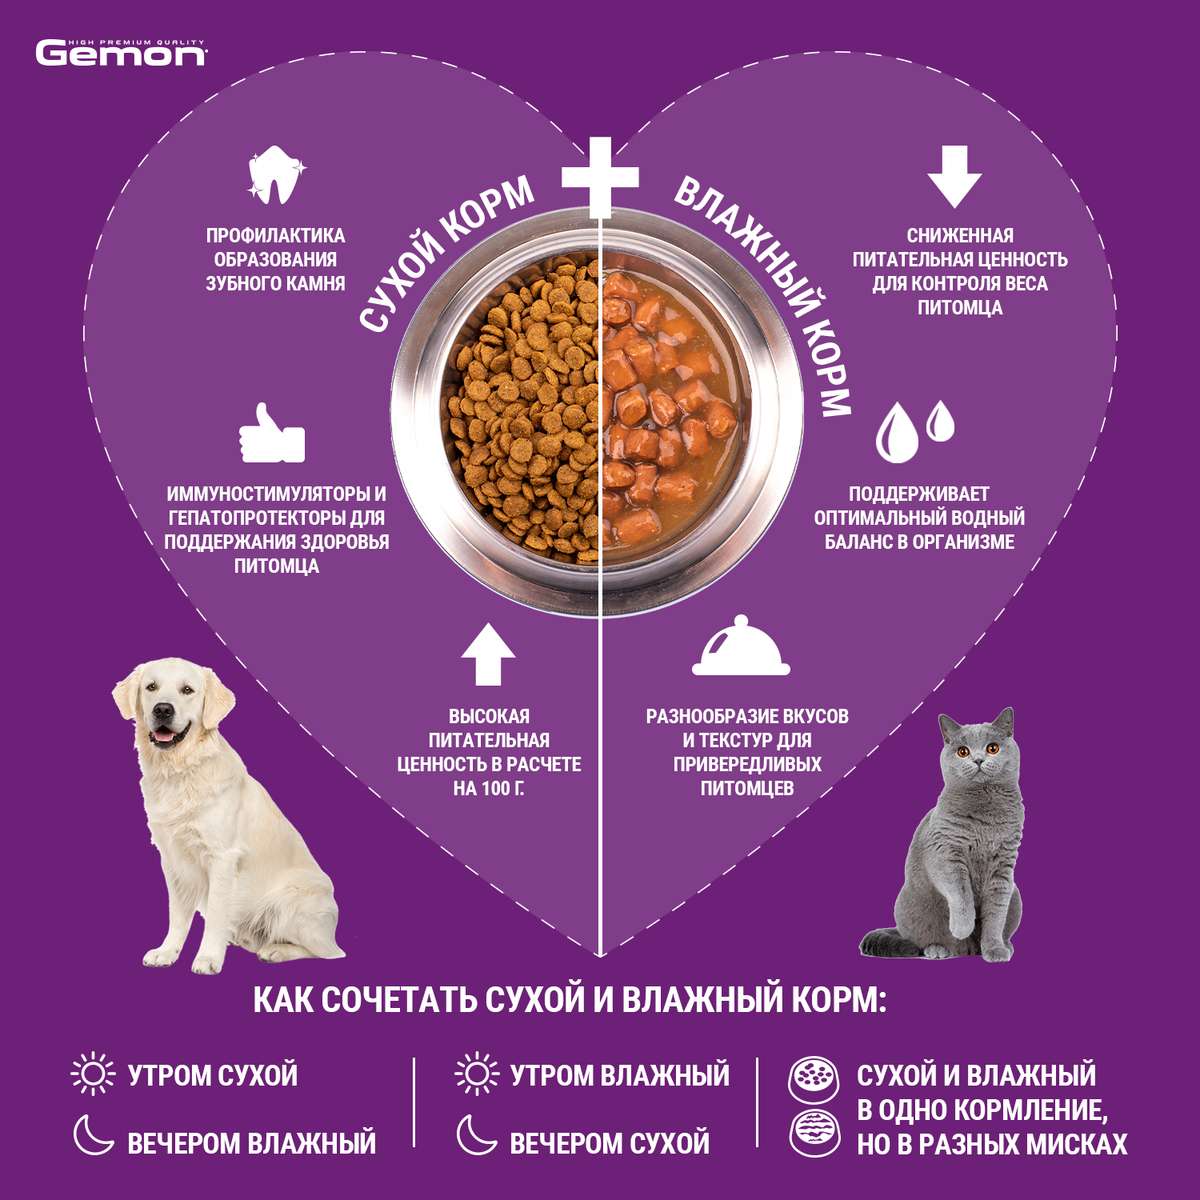 Влажный корм Gemon Dog Medium для взрослых собак средних пород, кусочки с говядиной и печенью, консервы 415 г